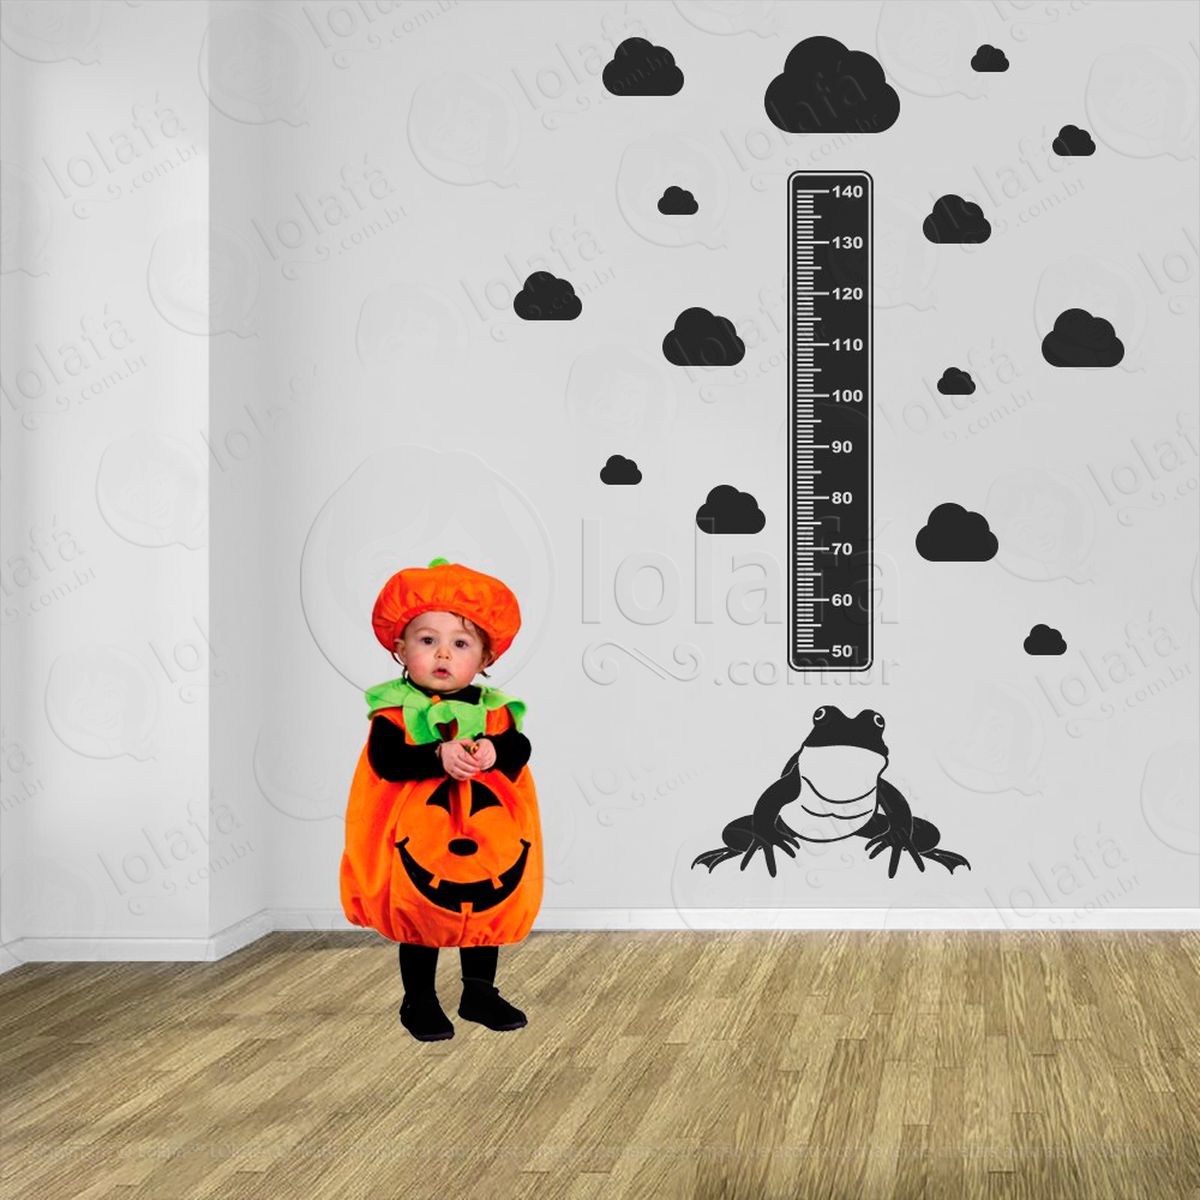 sapo e nuvens adesivo régua de crescimento infantil, medidor de altura para quarto, porta e parede - mod:939